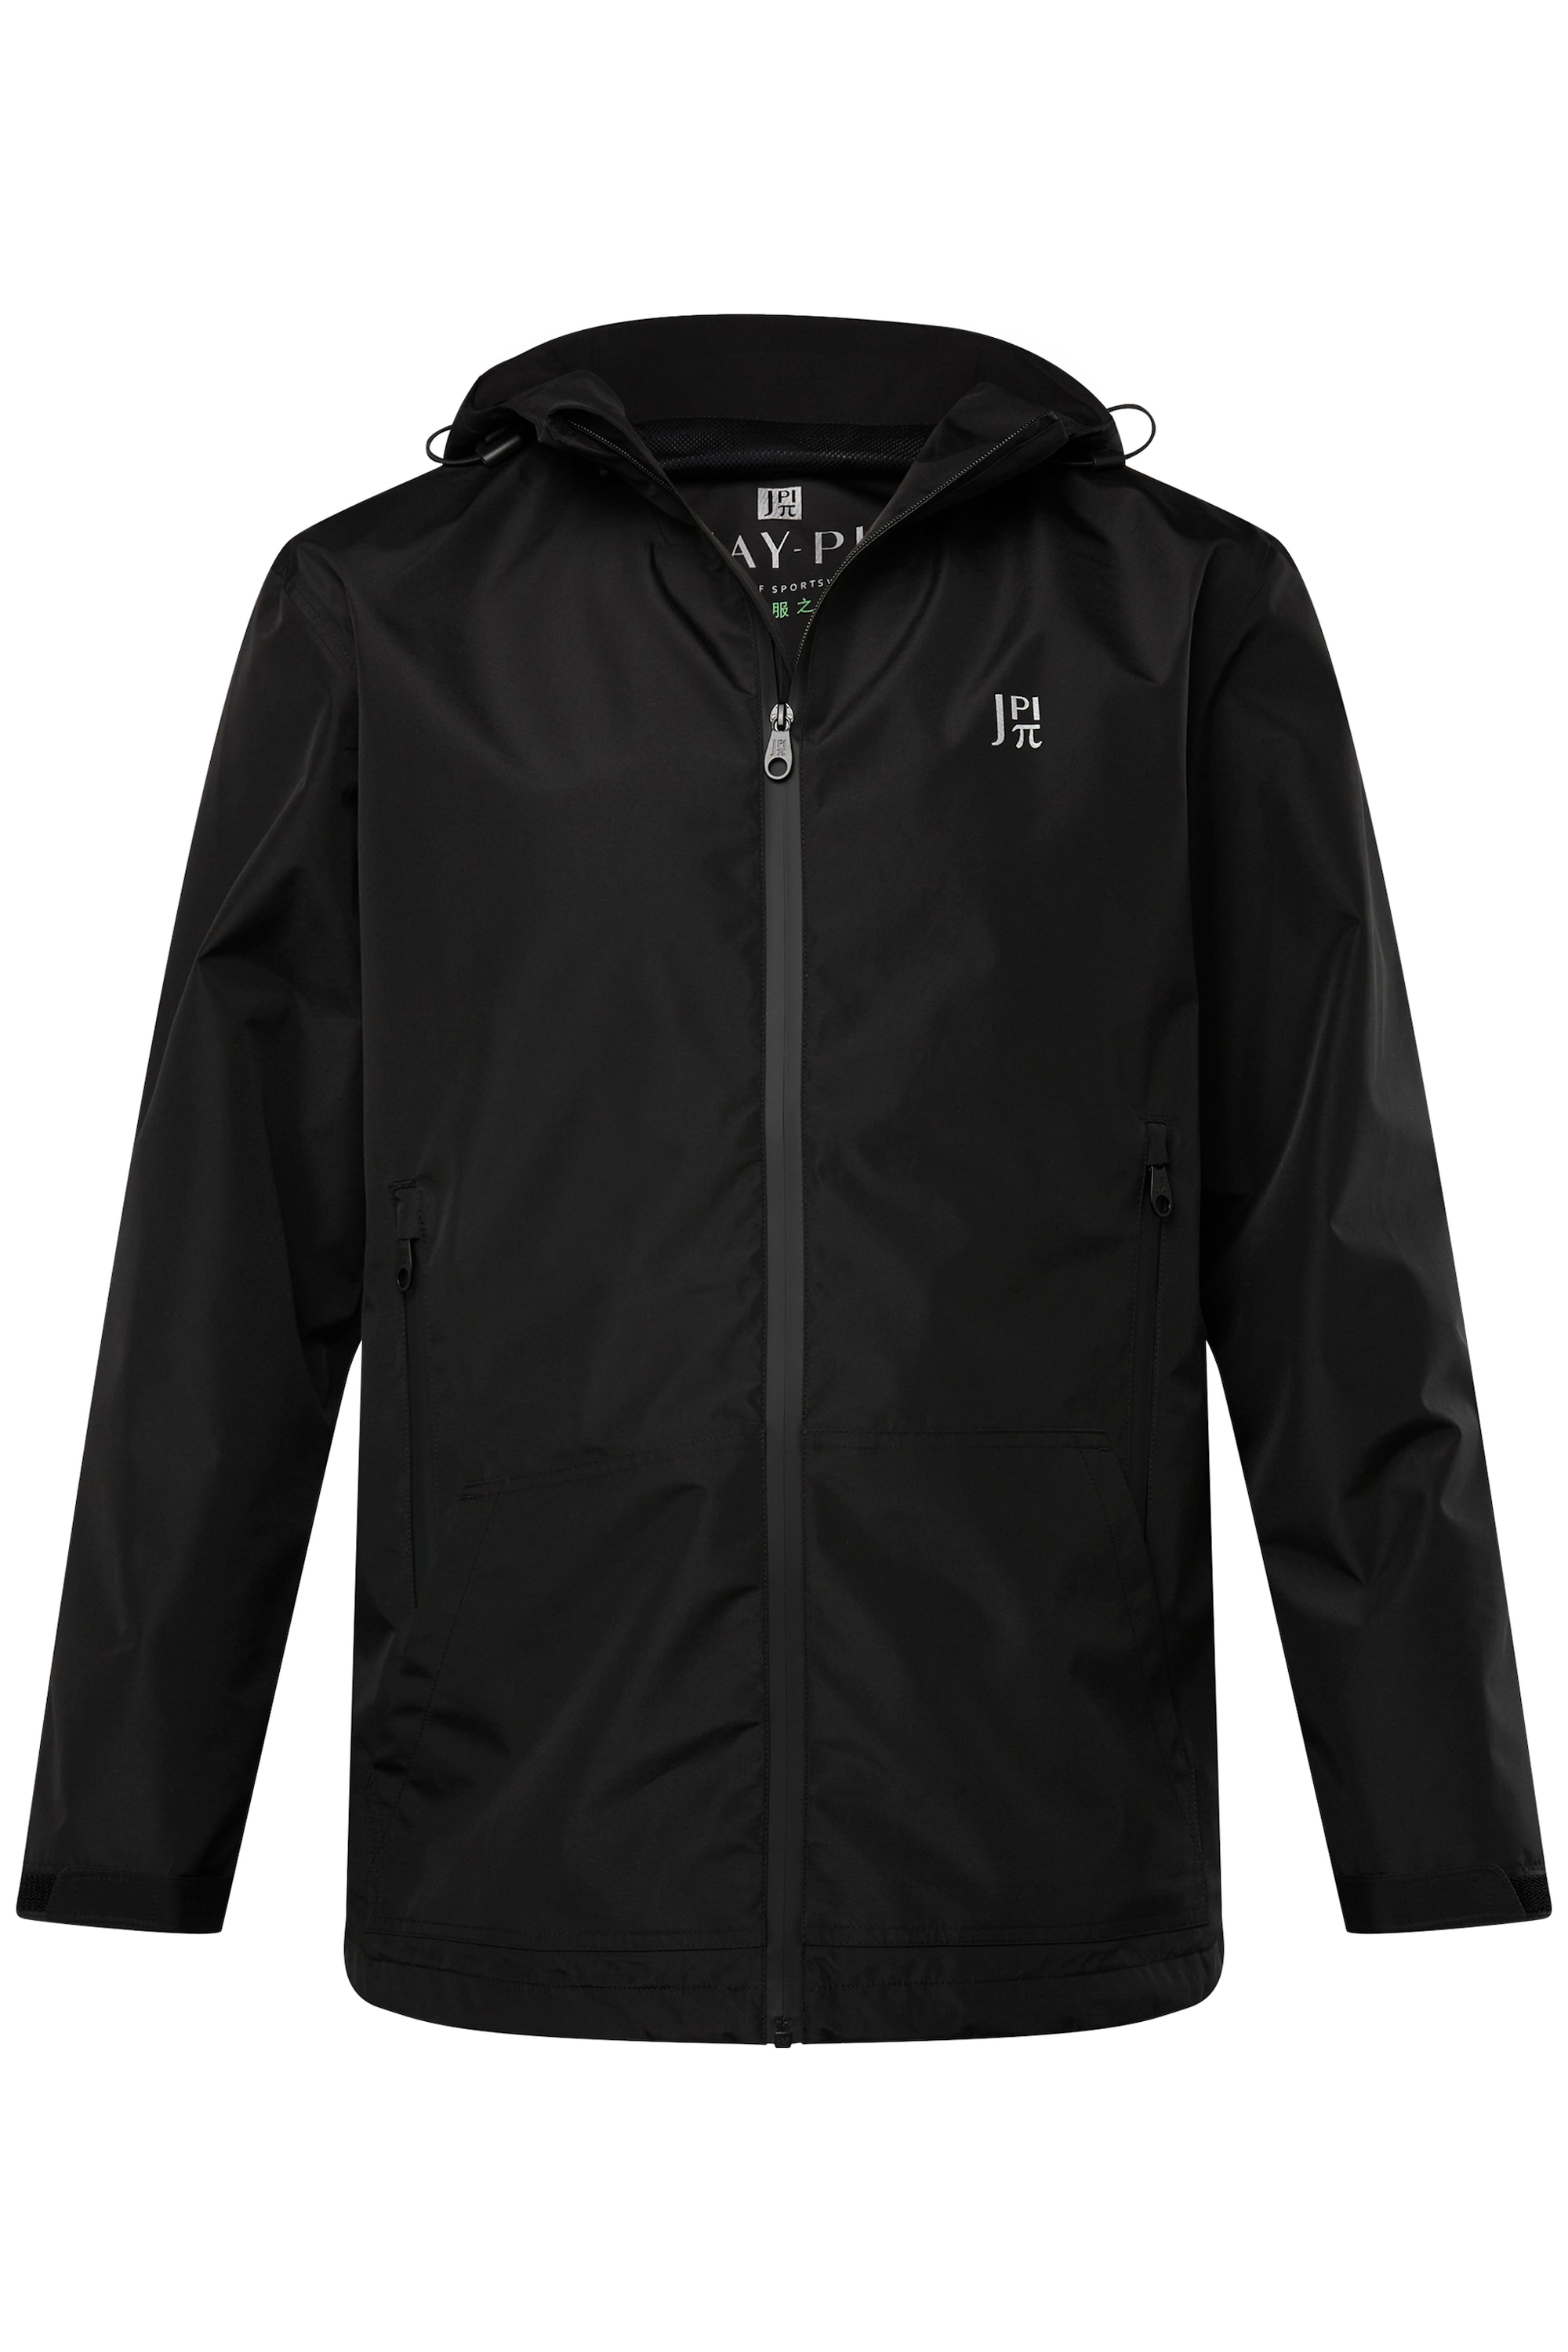 Куртка JP1880 Funktionsjacke, черный куртка jp1880 funktionsjacke цвет dunkel grün